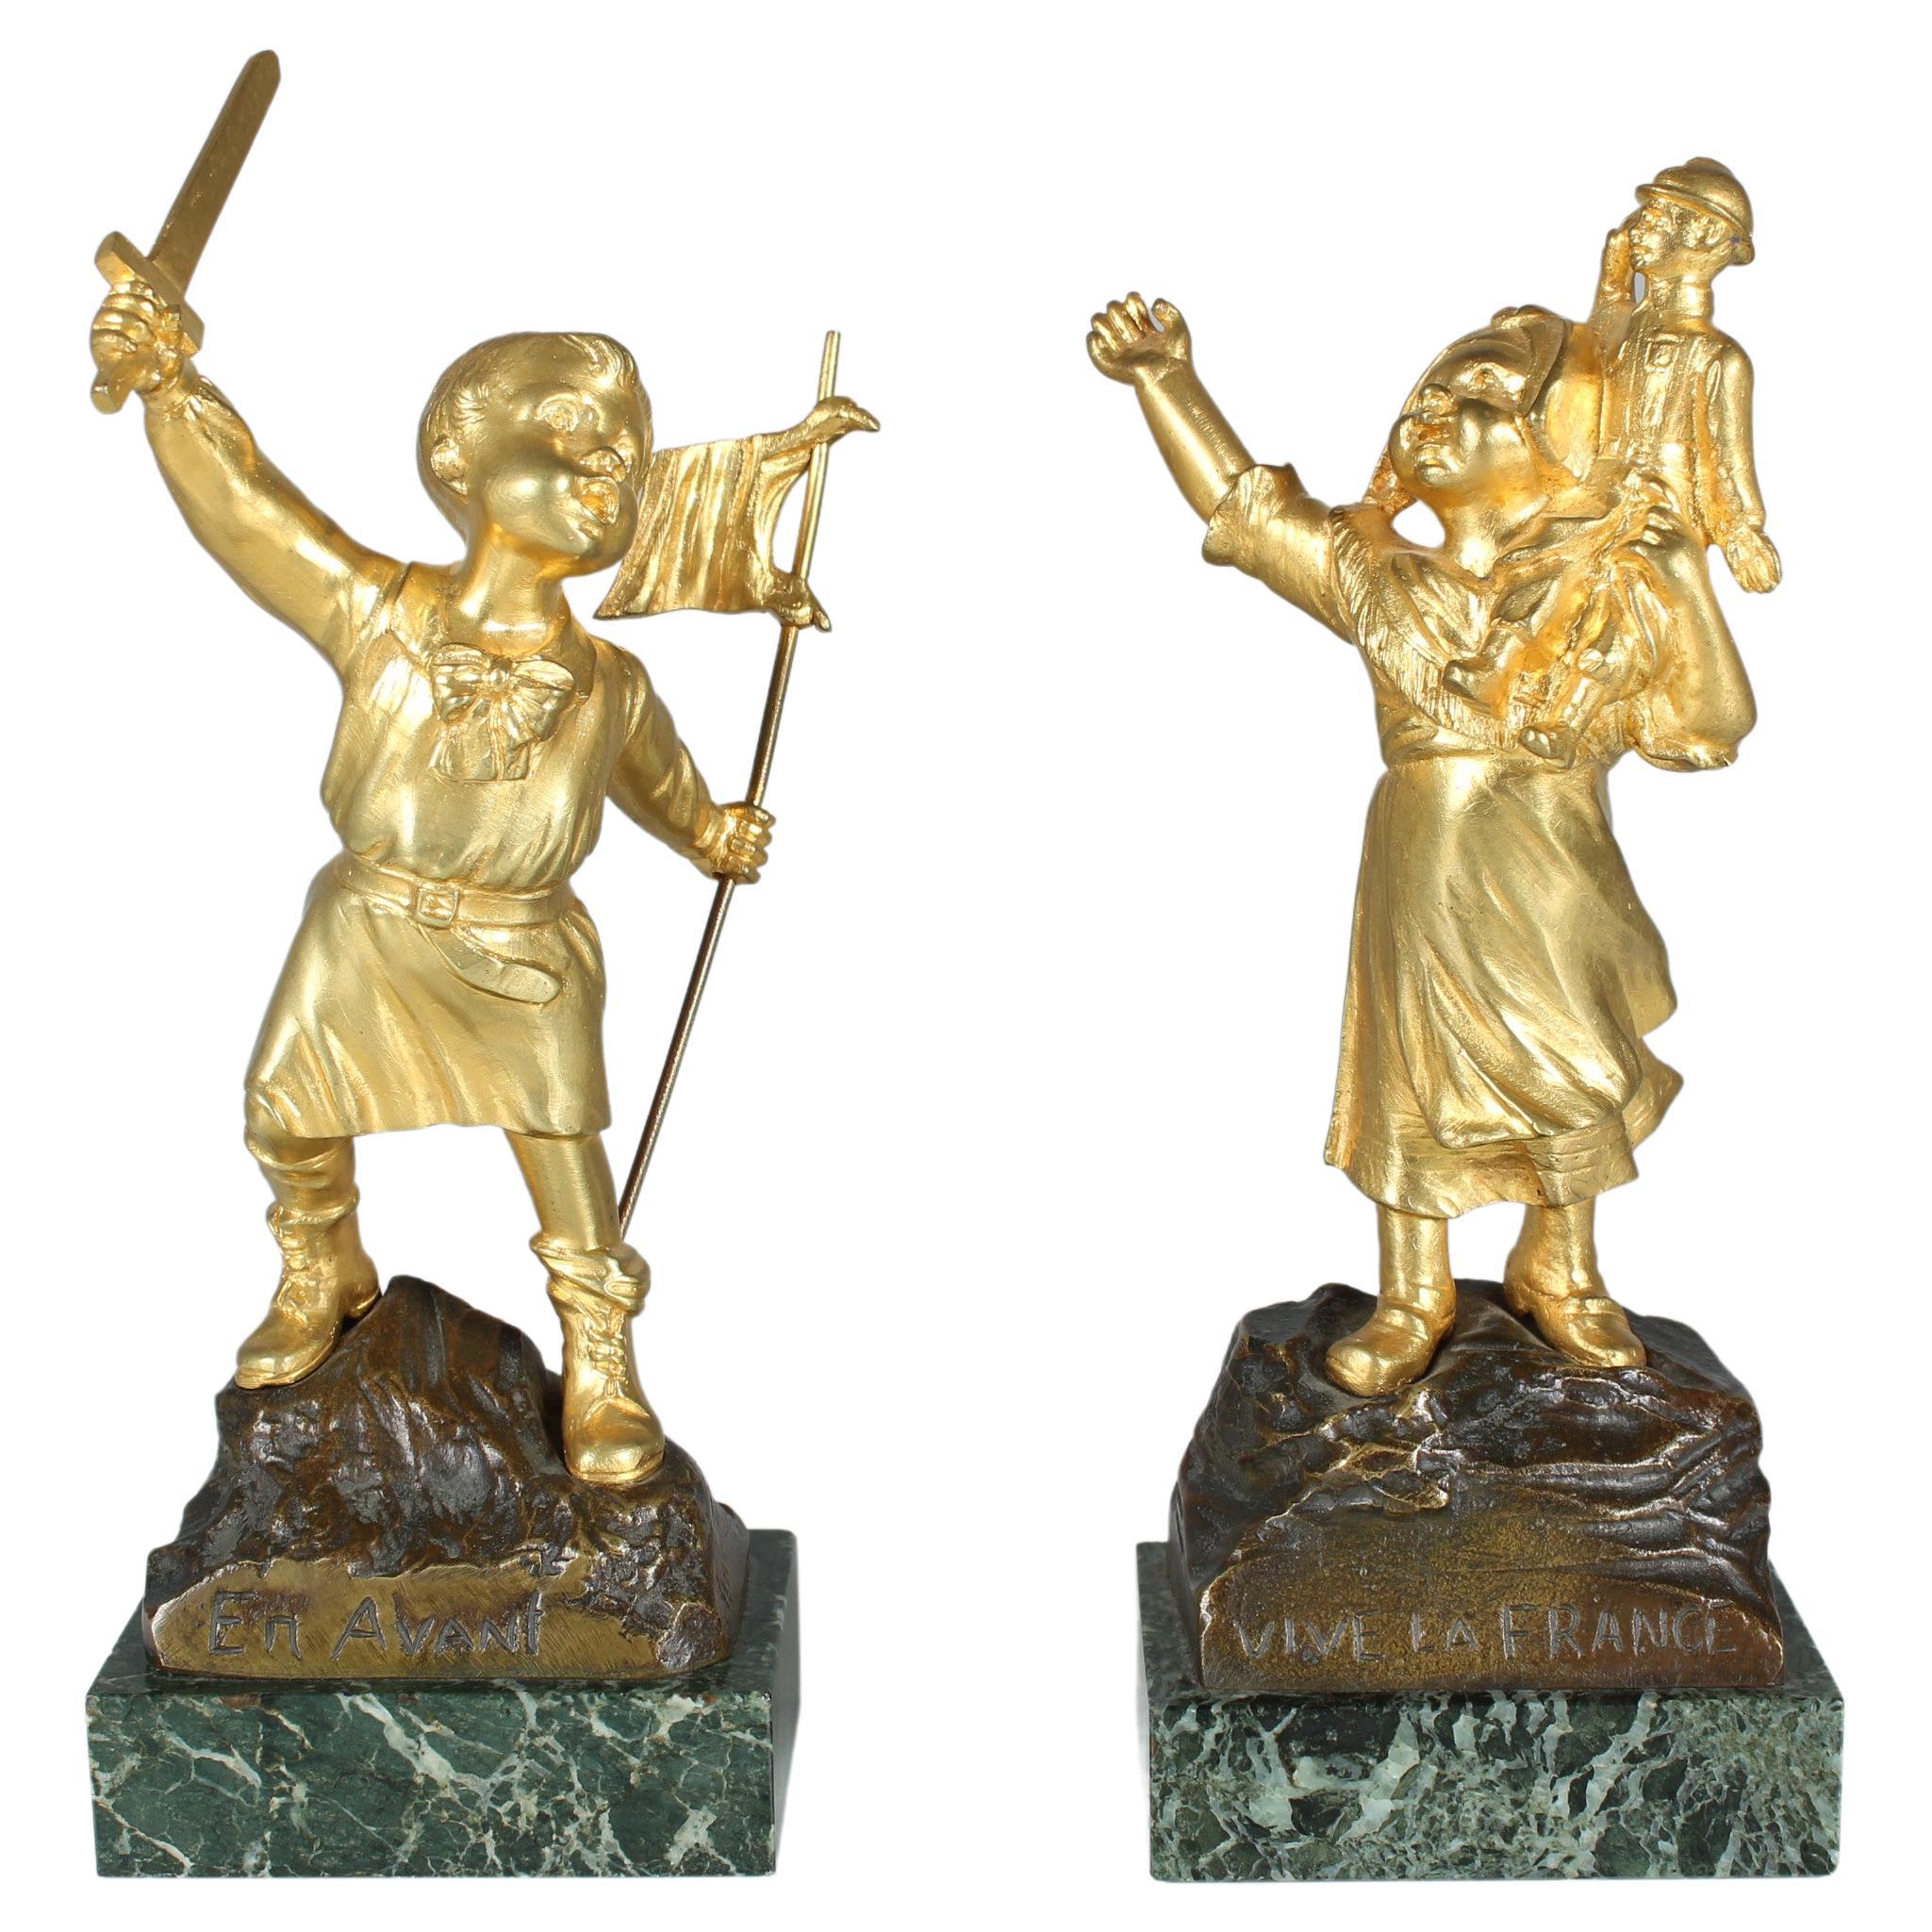 Seltenes antikes Skulpturenpaar, Bronze Dorée, Vive La France, signiert G. Flamend